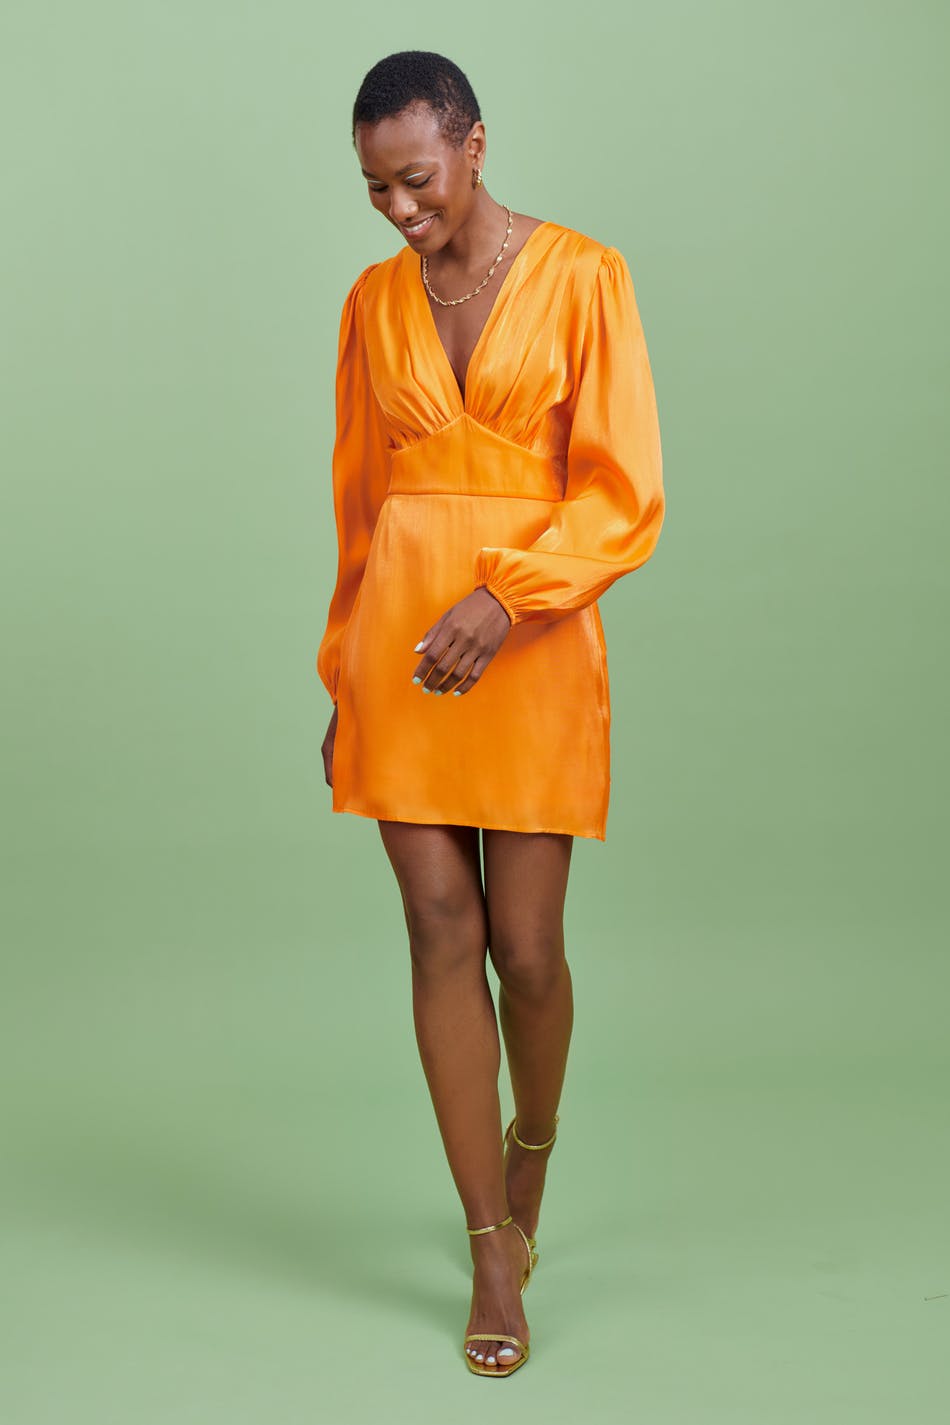 Gina Tricot TUBE DRESS - Shift dress - orange 